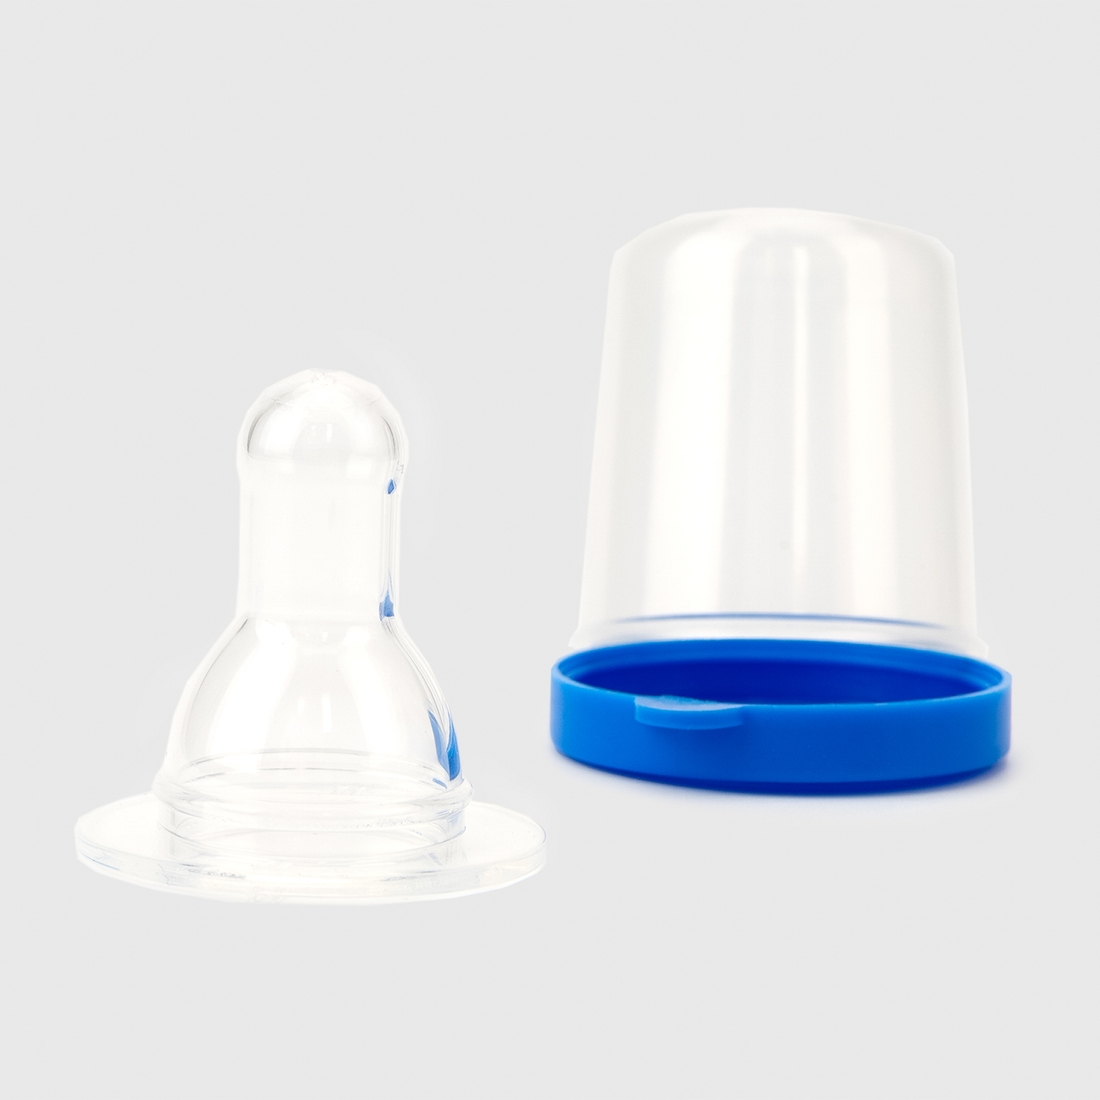 Фото Соска силиконовая круглая Lindo Pk 051/L для бутылочек со стандартным горлом Синий (2000901469942)